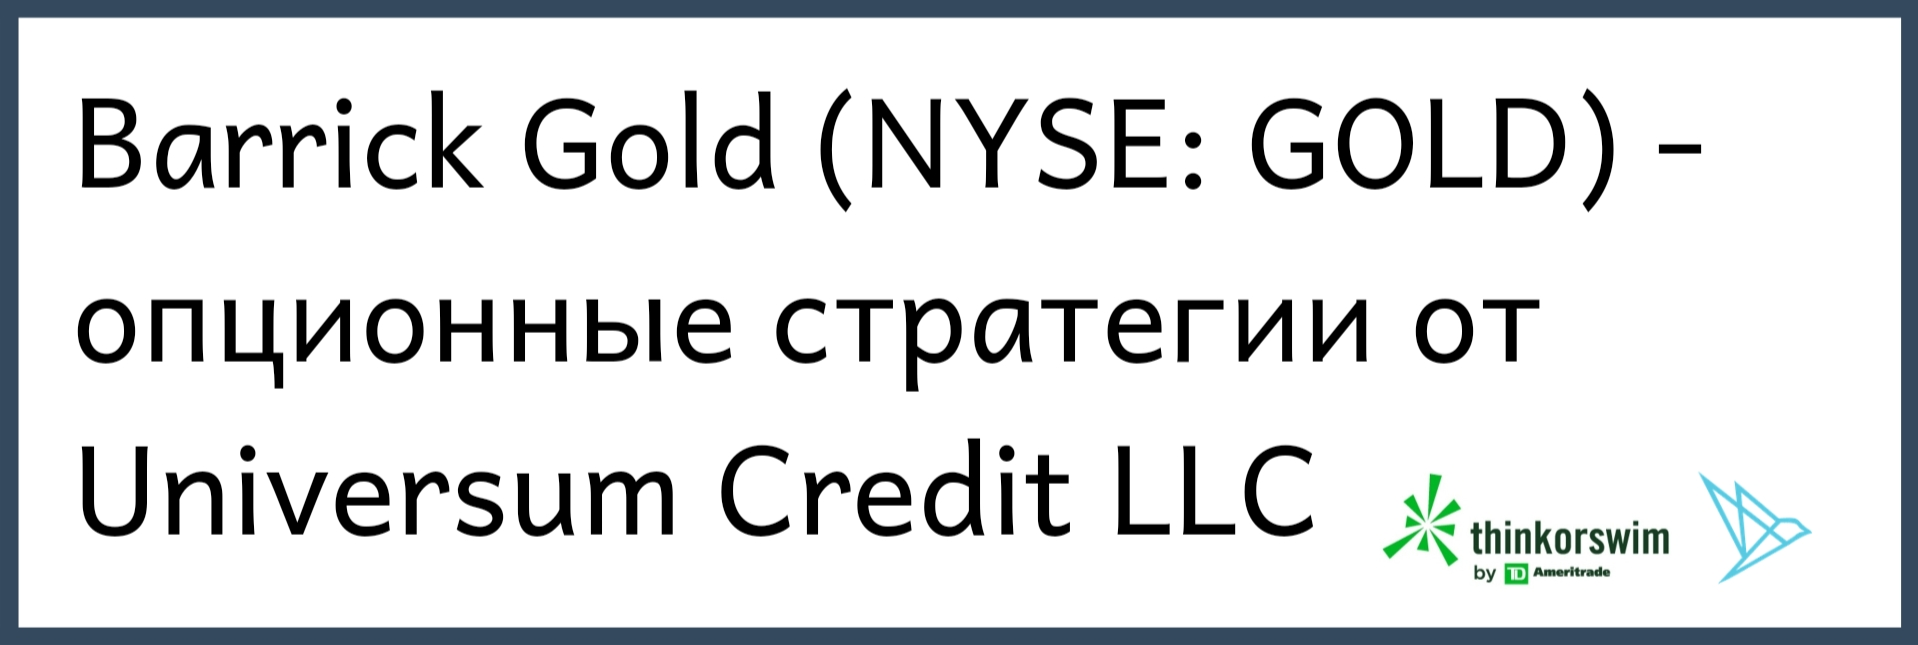 опционные стратегии NYSE Barrick GOLD Universum Credit вложить деньги выгодно 2021